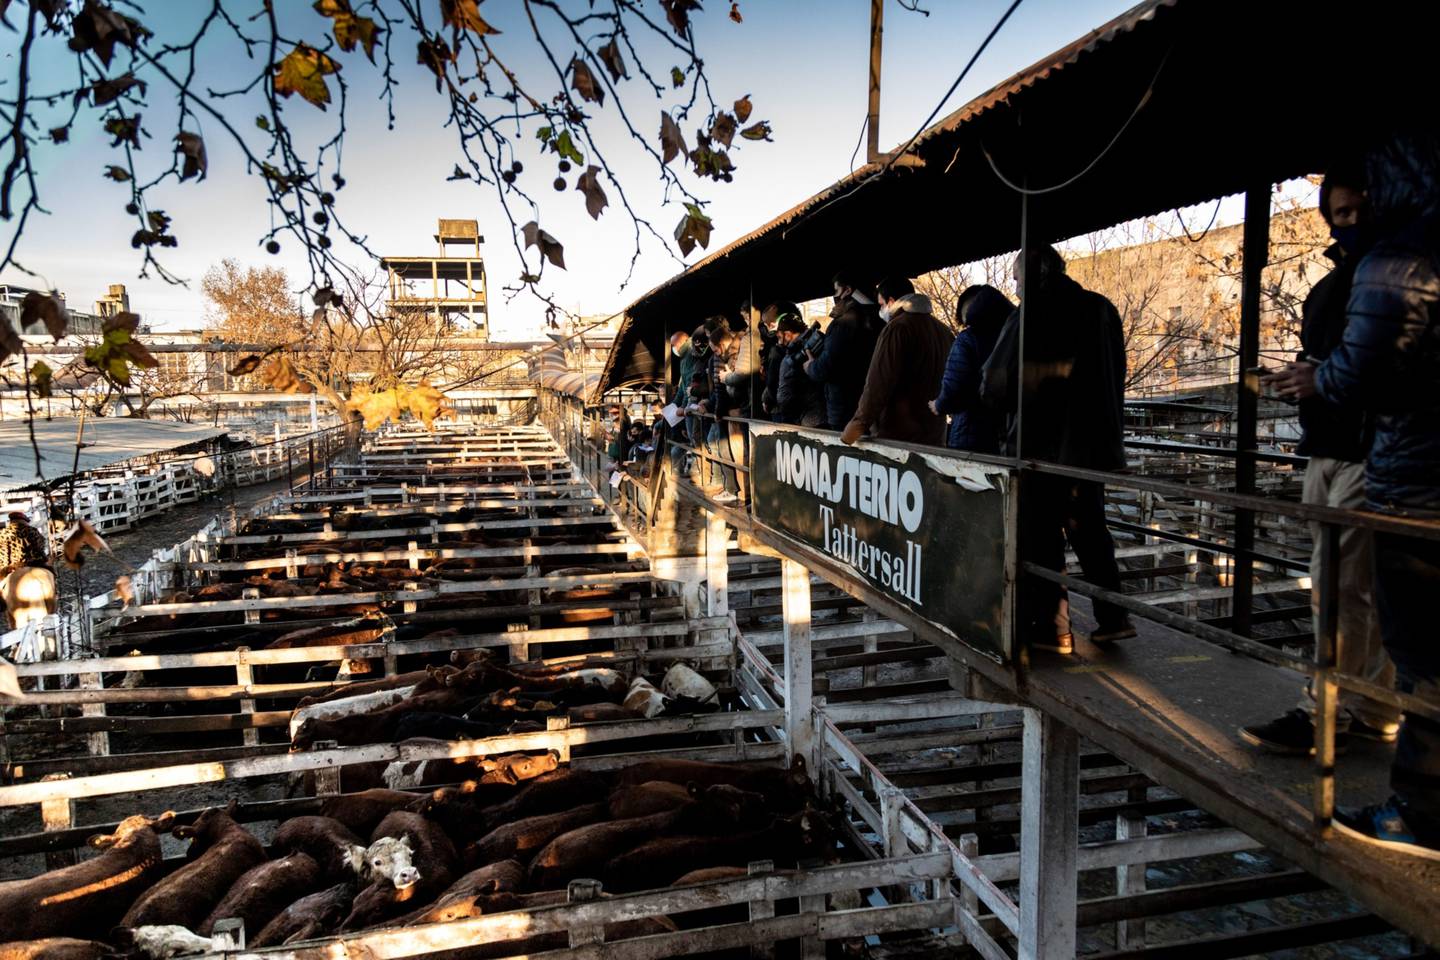 Los compradores inspeccionan el ganado en las 84 hectáreas de Liniers, que es un trozo de la Argentina rural y tradicional dentro de los límites de una capital que se está modernizando. Fotógrafa: Anita Pouchard Serra/Bloombergdfd